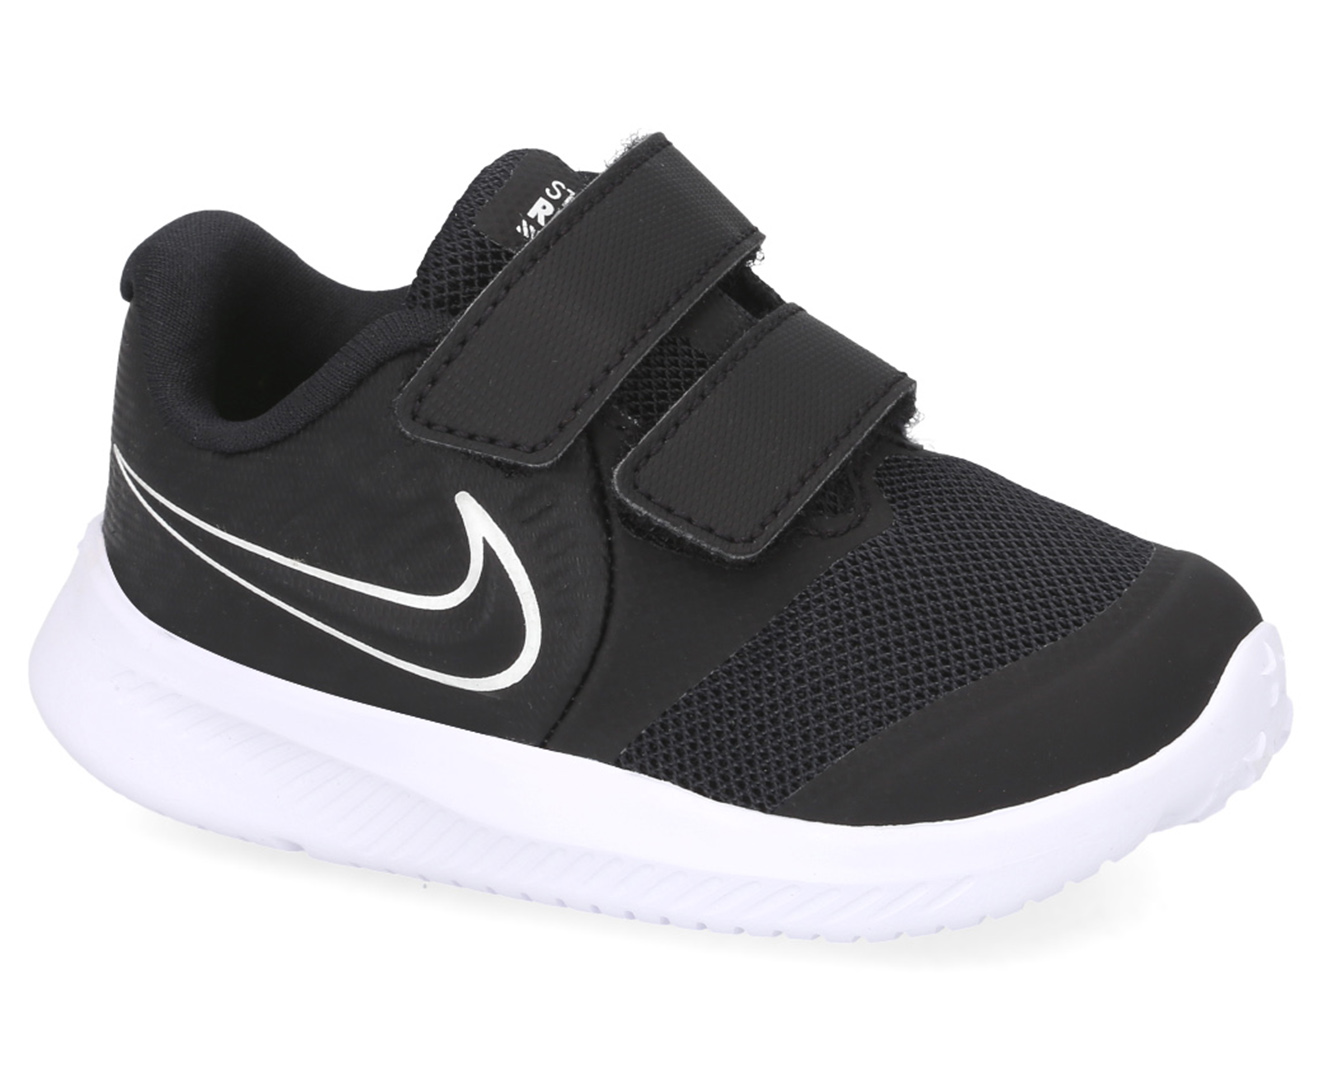 Nike Toddler Boys' Star Runner 2 Running Shoes - Black/White/Volt ...